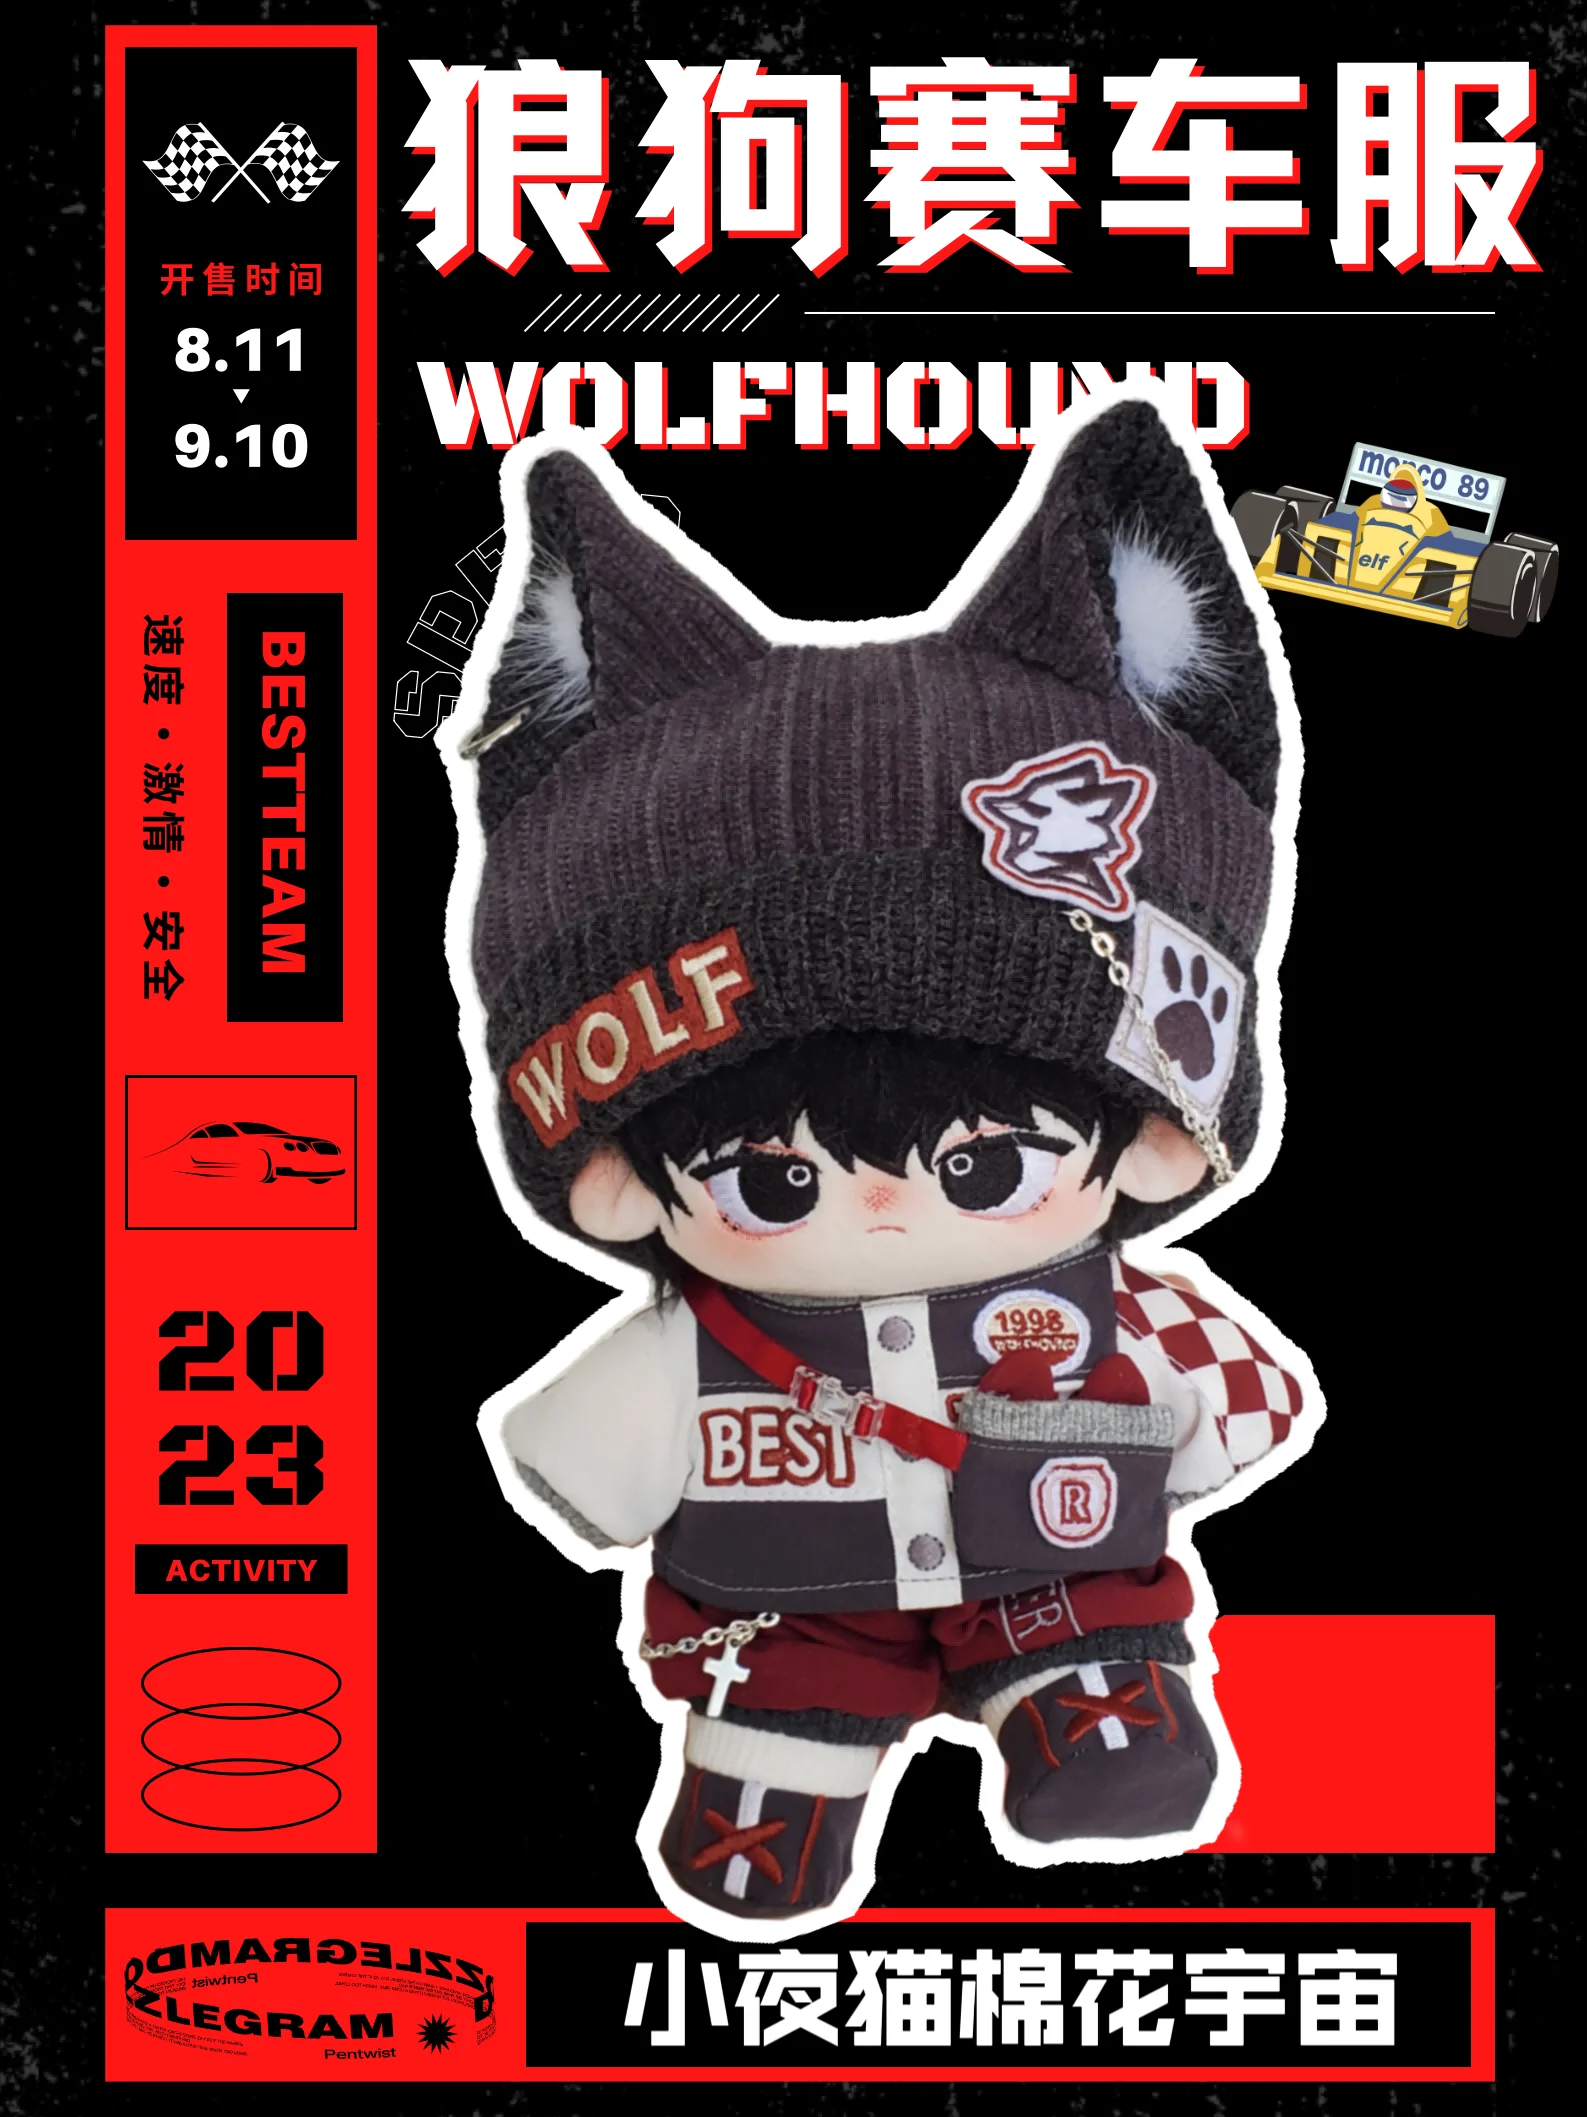 

Оригинальный гоночный костюм из серии «волк, собака», крутой красивый модный костюм в стиле панк, косплей, 20 см, плюшевая кукла, одежда, наряд, подарок